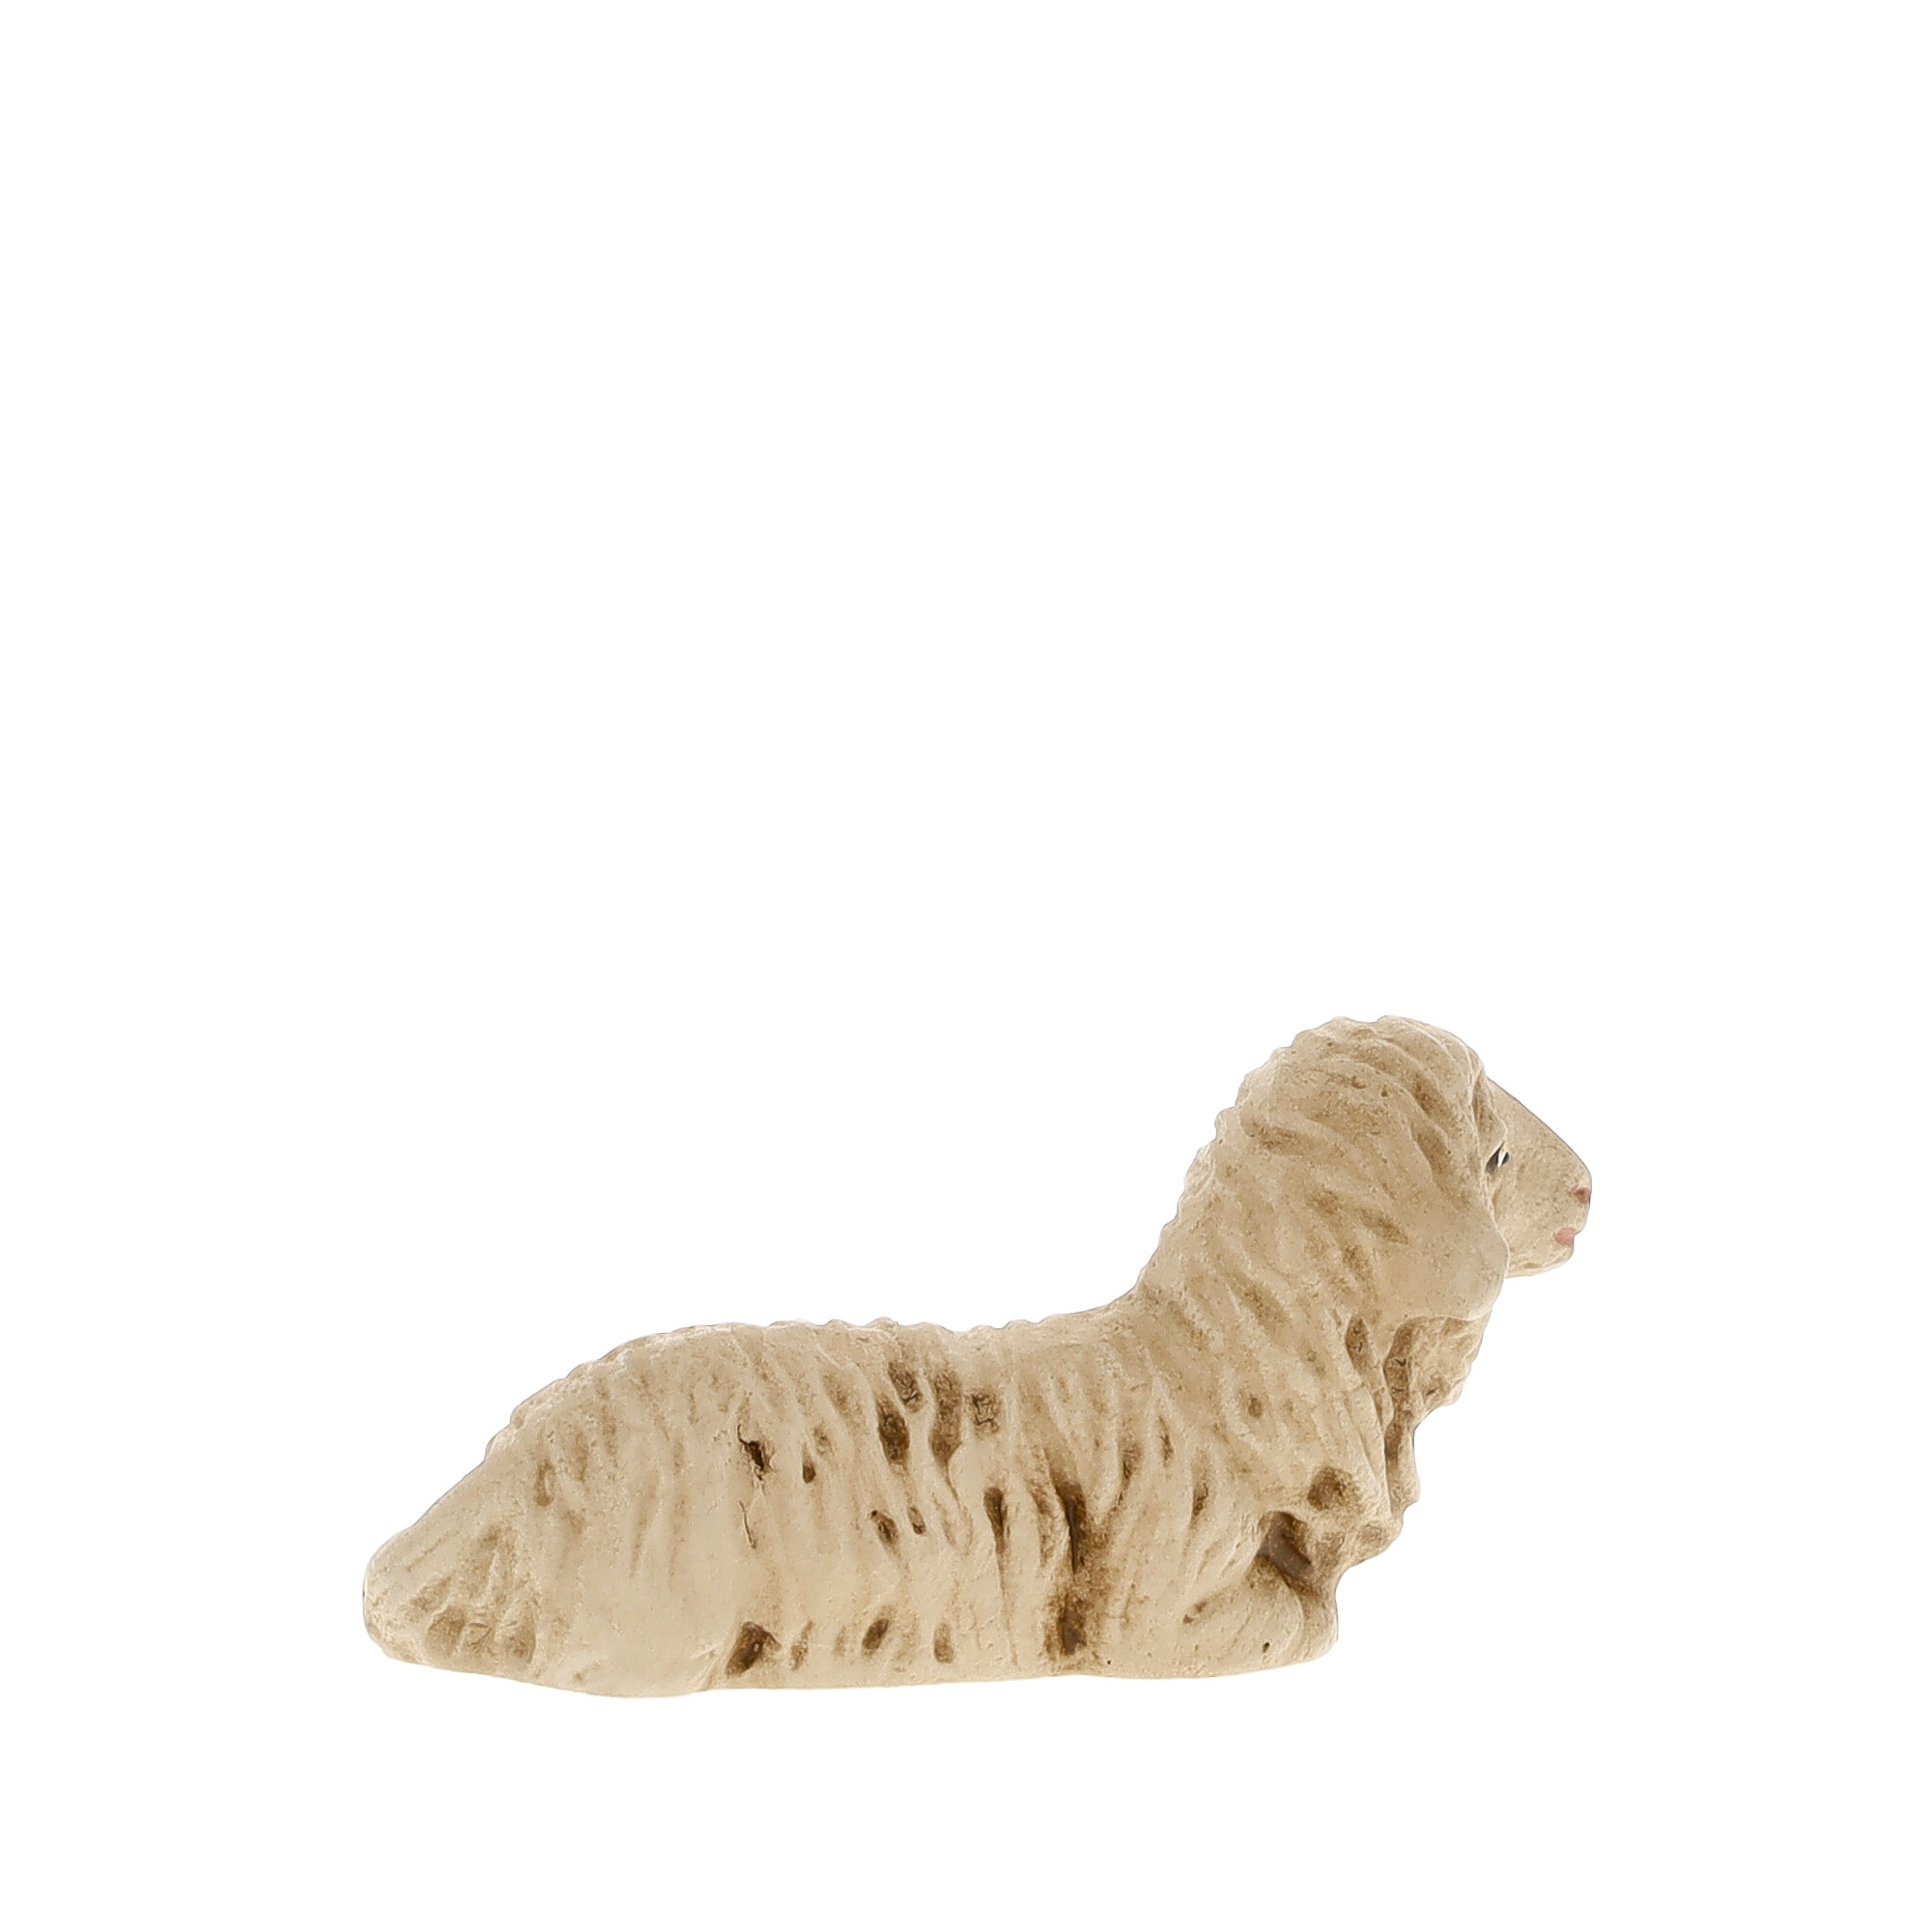 Schaf liegend - MAROLIN Krippenfigur